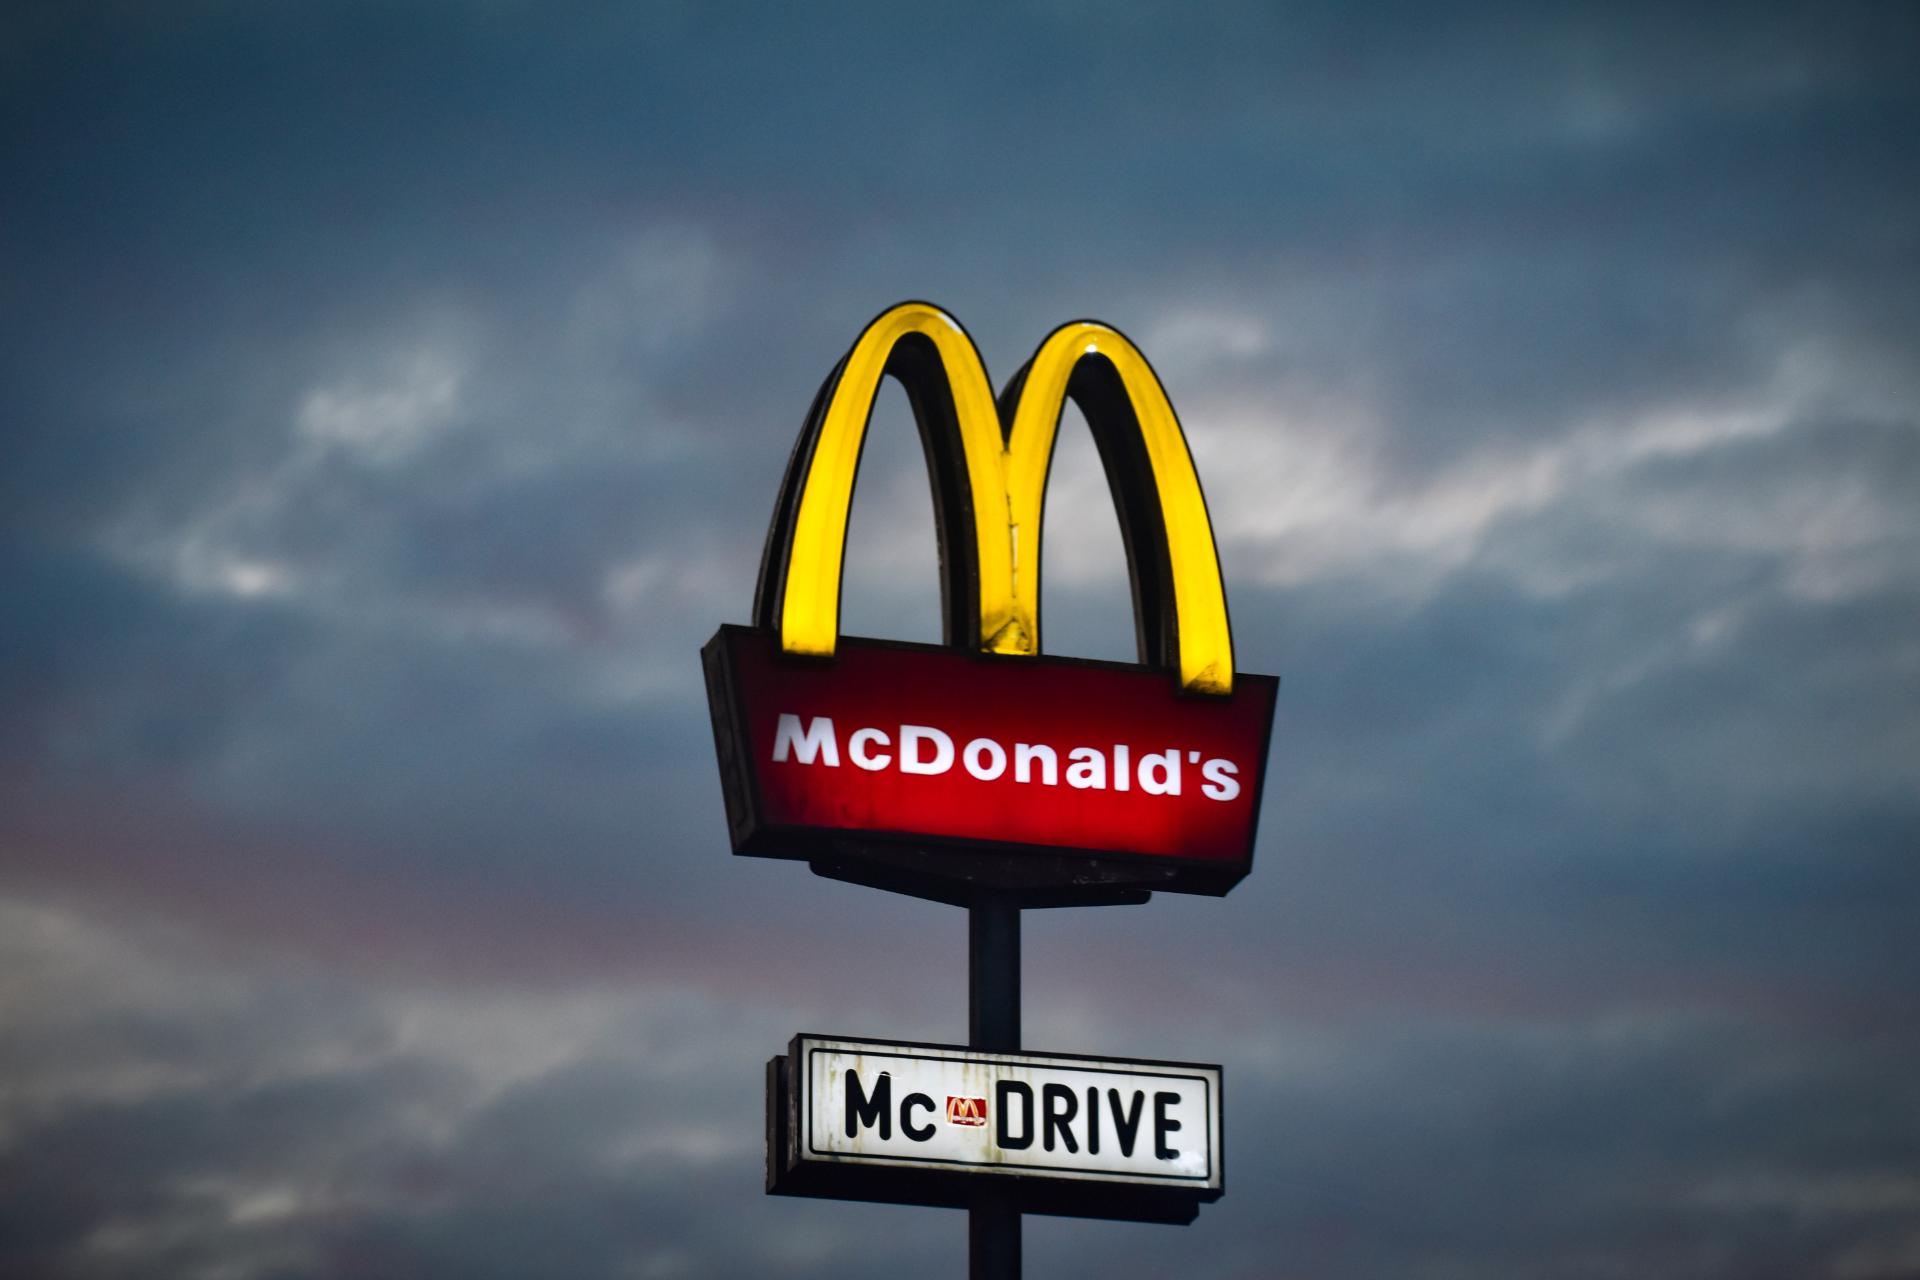 il nome McDonald's è conosciuto in tutto il mondo. Dovresti mirare a replicare questo successo nominando correttamente la tua attività di dessert